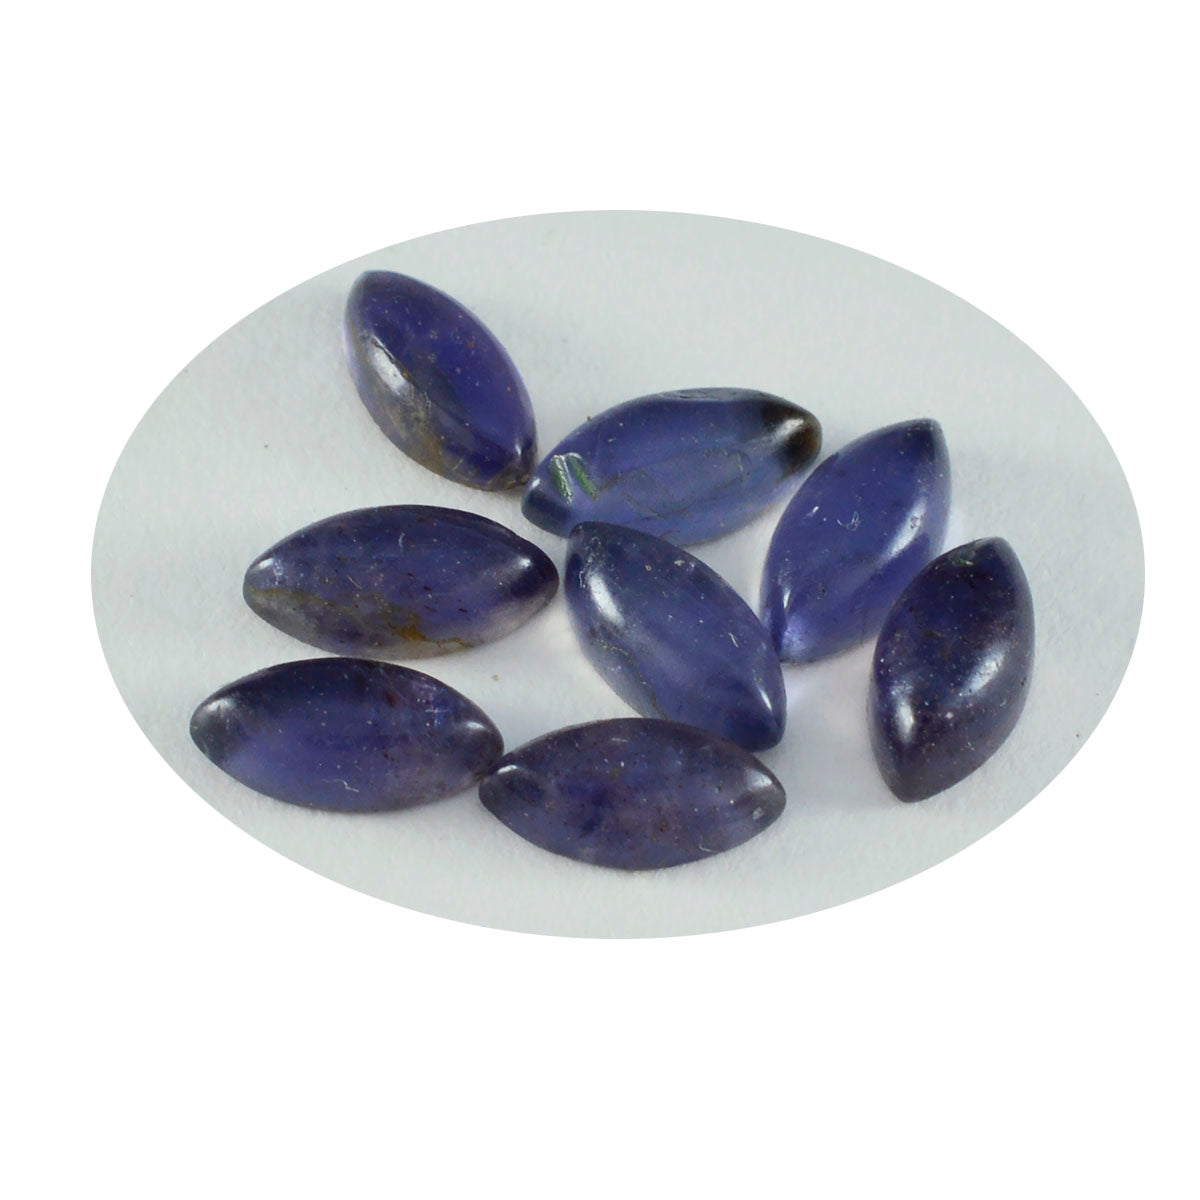 Riyogems 1PC Blue Iolite Cabochon 5x10 mm Marquise Shape Nice Quality Gemstone